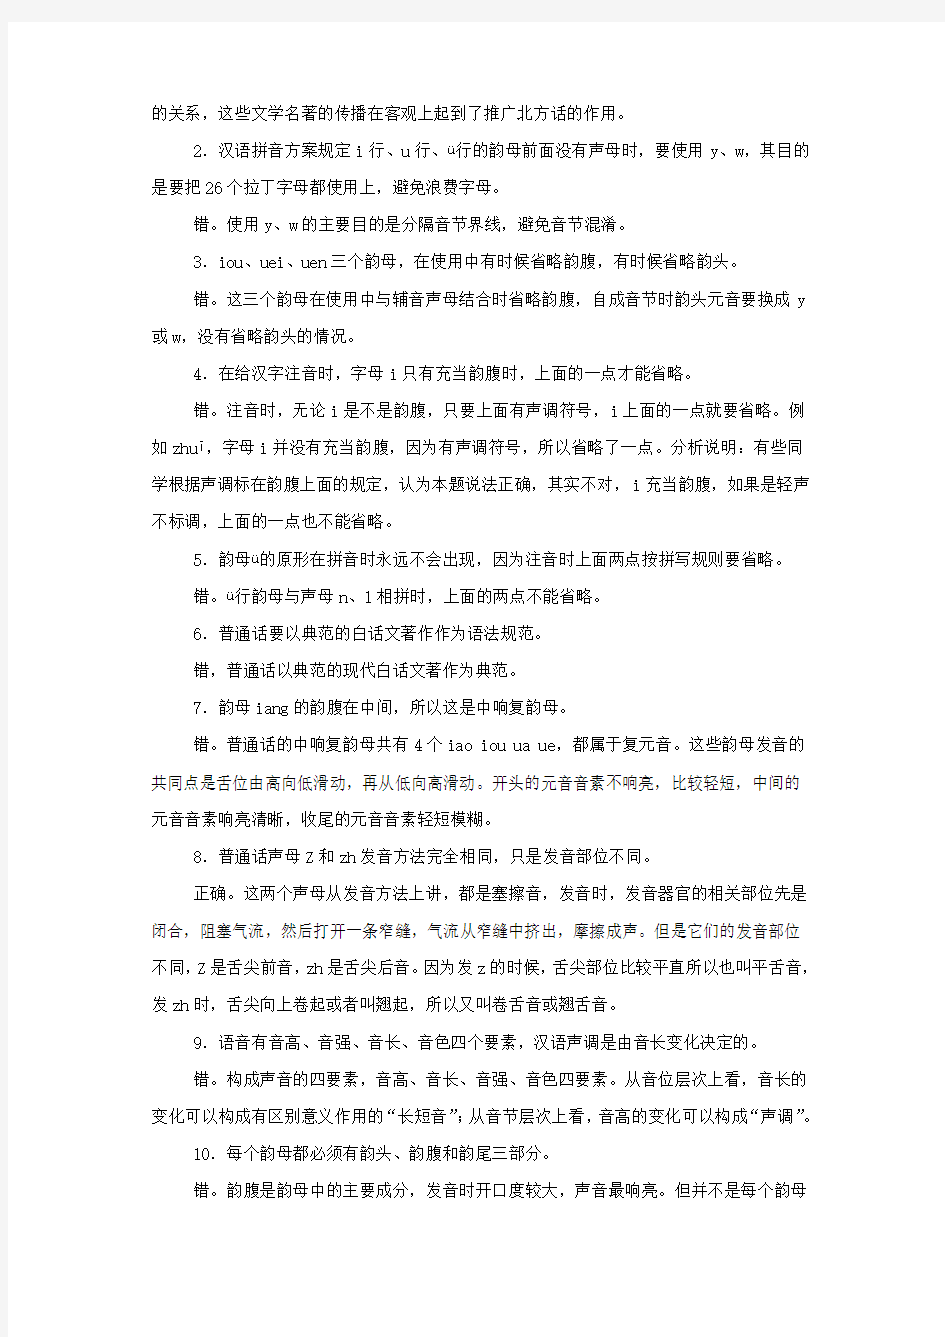 2015年电大《现代汉语专题》形成性考核作业答案